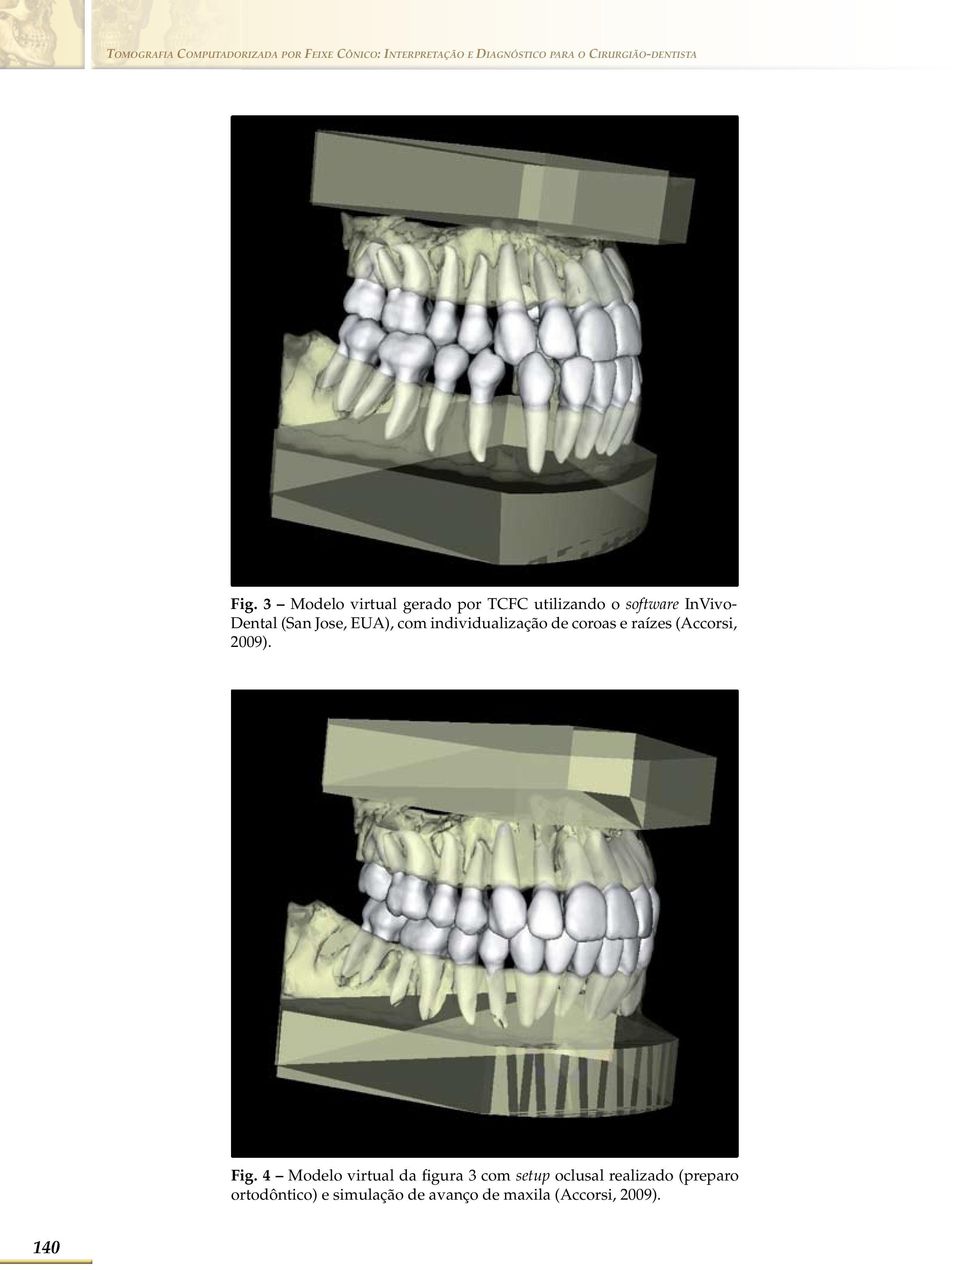 3 Modelo virtual gerado por TCFC utilizando o software InVivo- Dental (San Jose, EUA), com